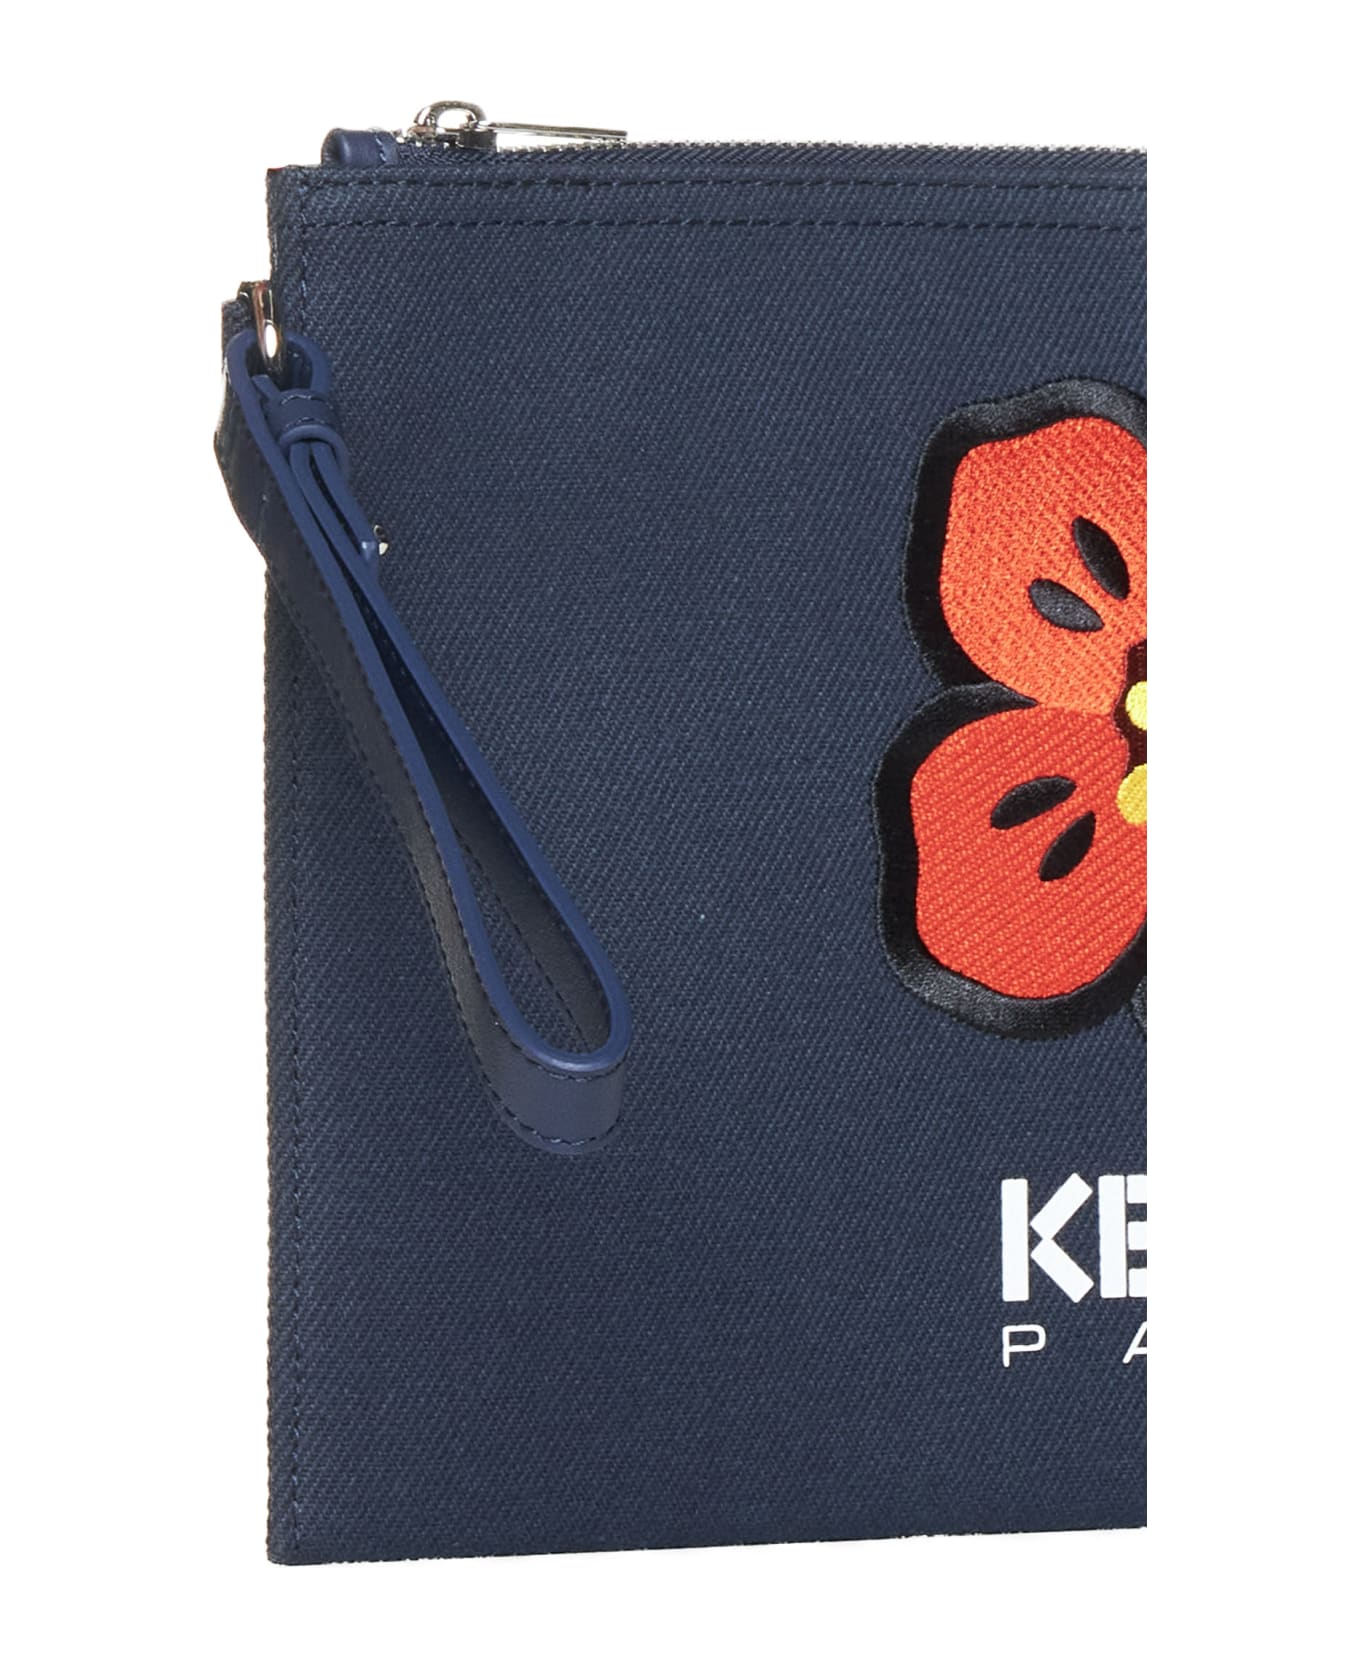 Kenzo Boke Flower Clutch - Navy blue